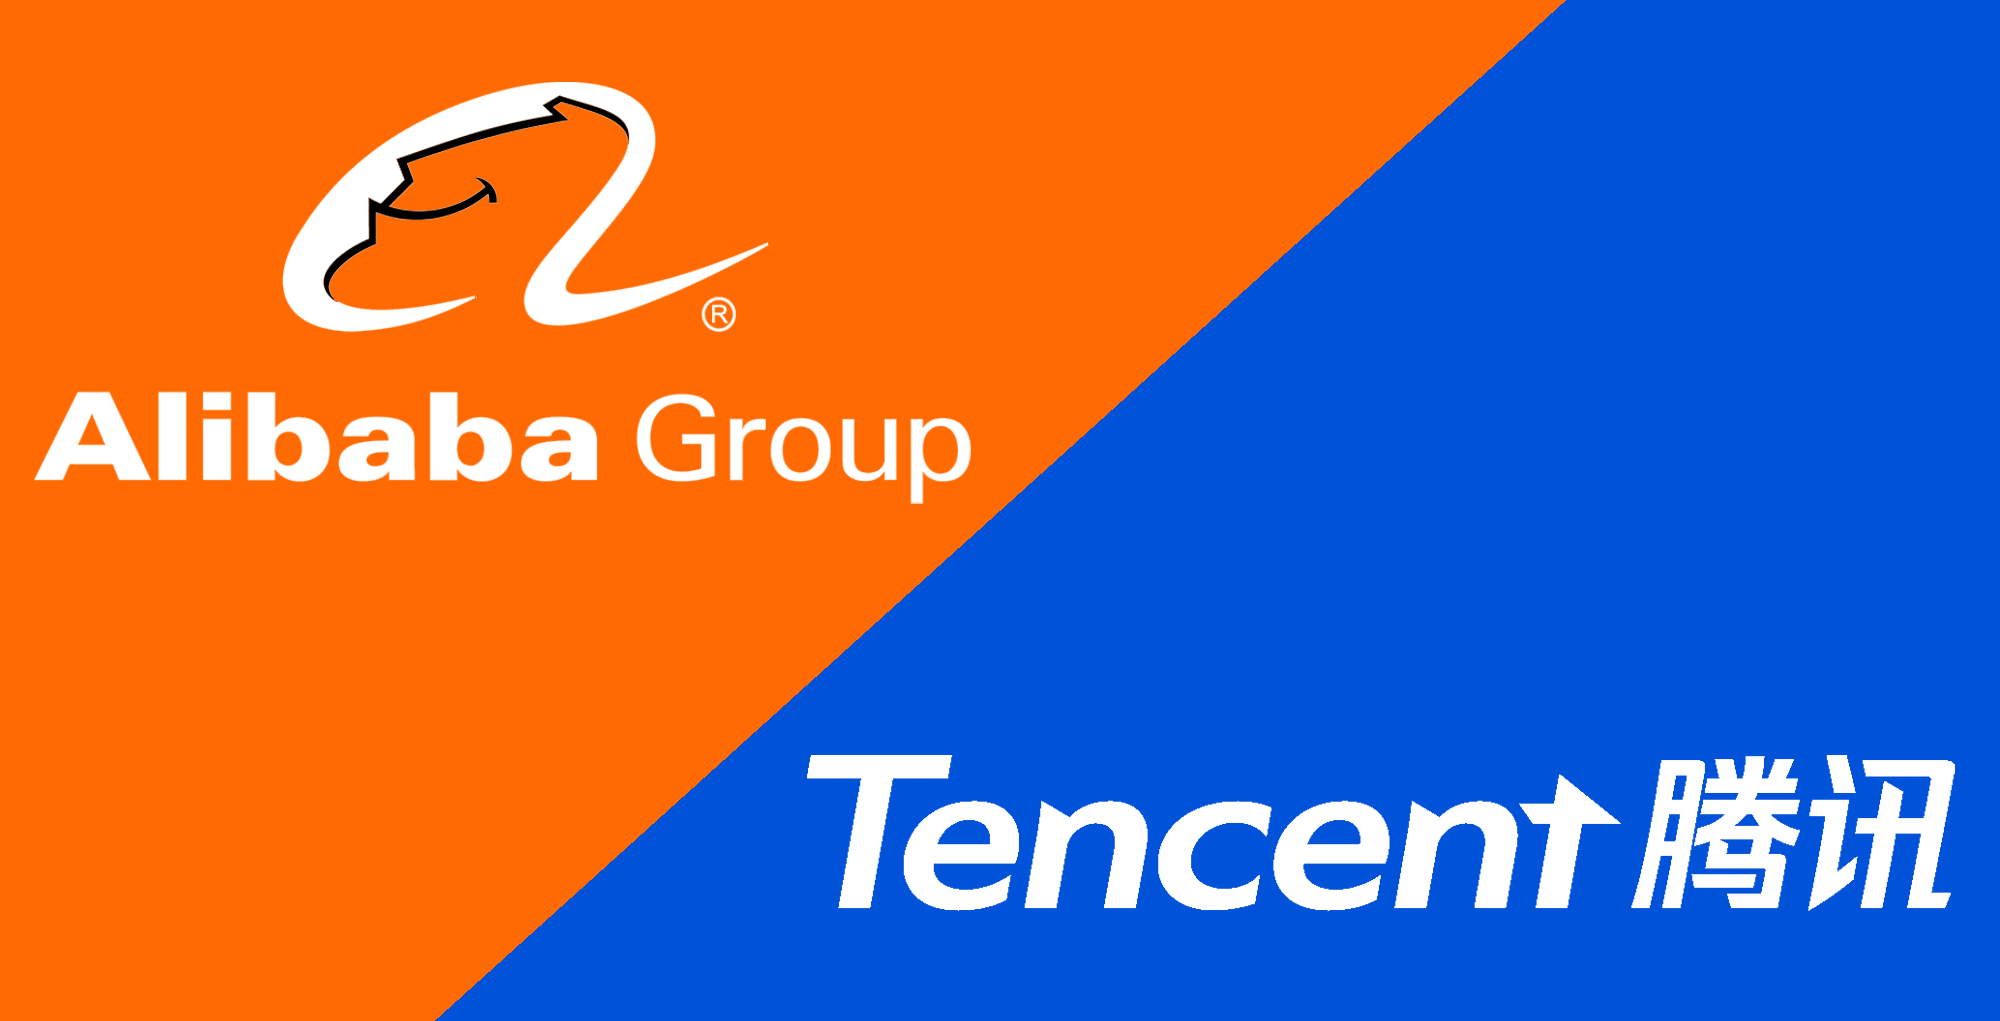 هلدینگ چینی علی بابا و تنسنت - Alibaba Group And Tencent